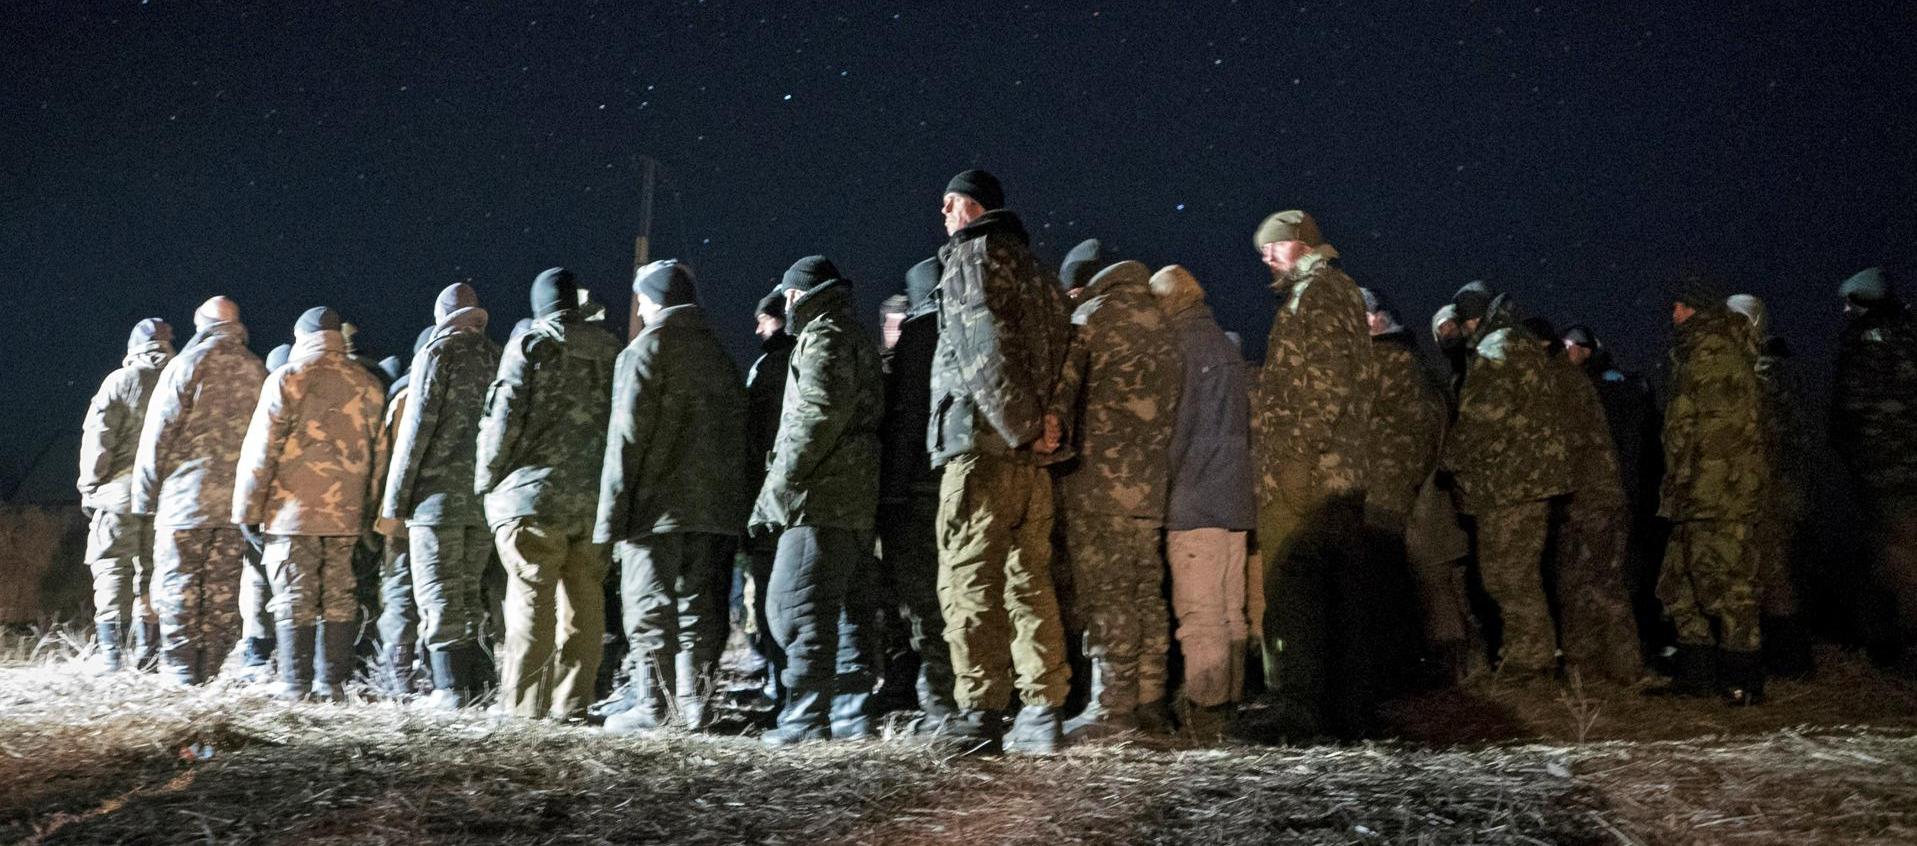  Imagen de archivo de prisioneros ucranianos cerca de Lugansk, región controlada por las tropas rusas.